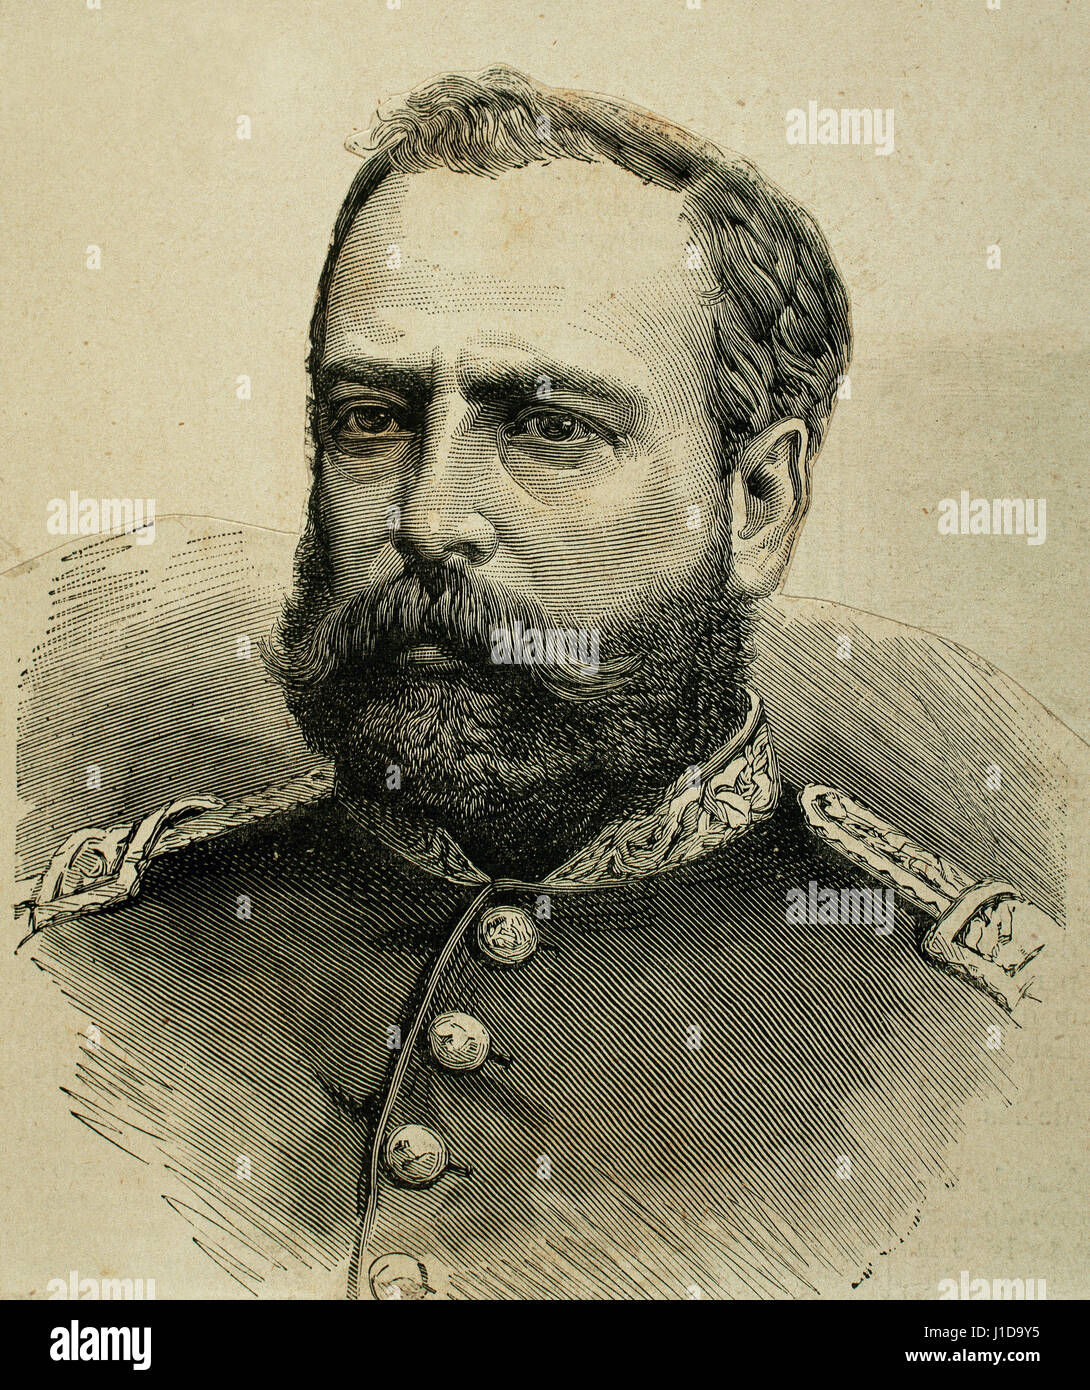 Mariano Ignacio Prado (1825-1901). El general del ejército peruano y presidente del Perú. Retrato. Grabado. Foto de stock